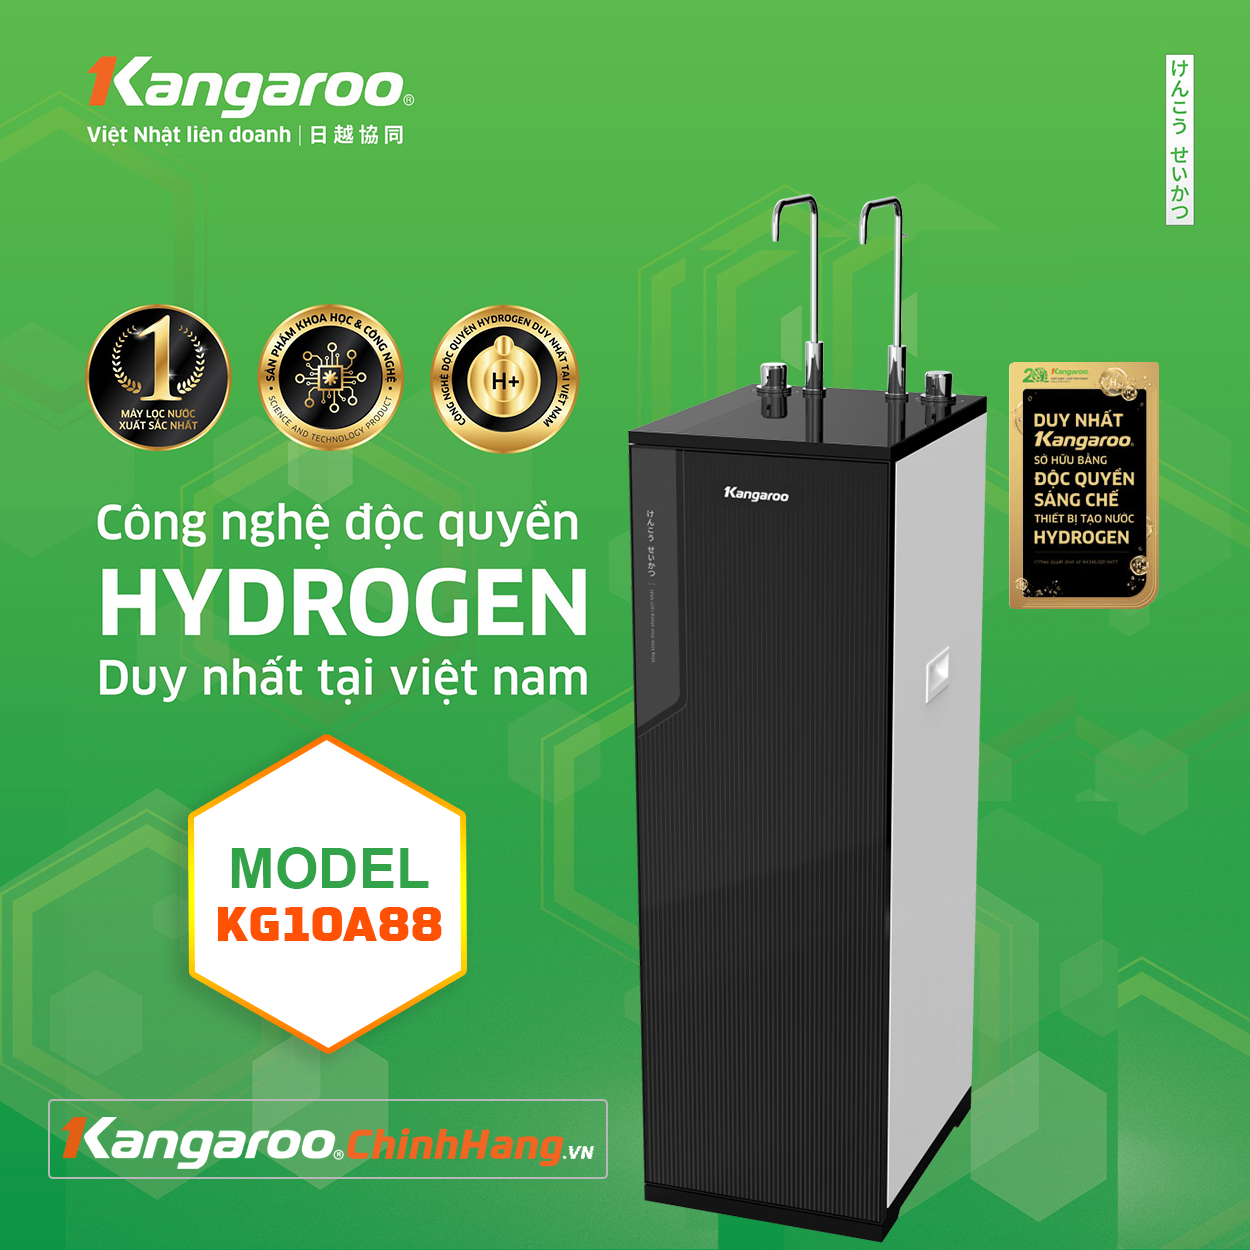 Máy lọc nước Kangaroo Hydrogen KG10A88